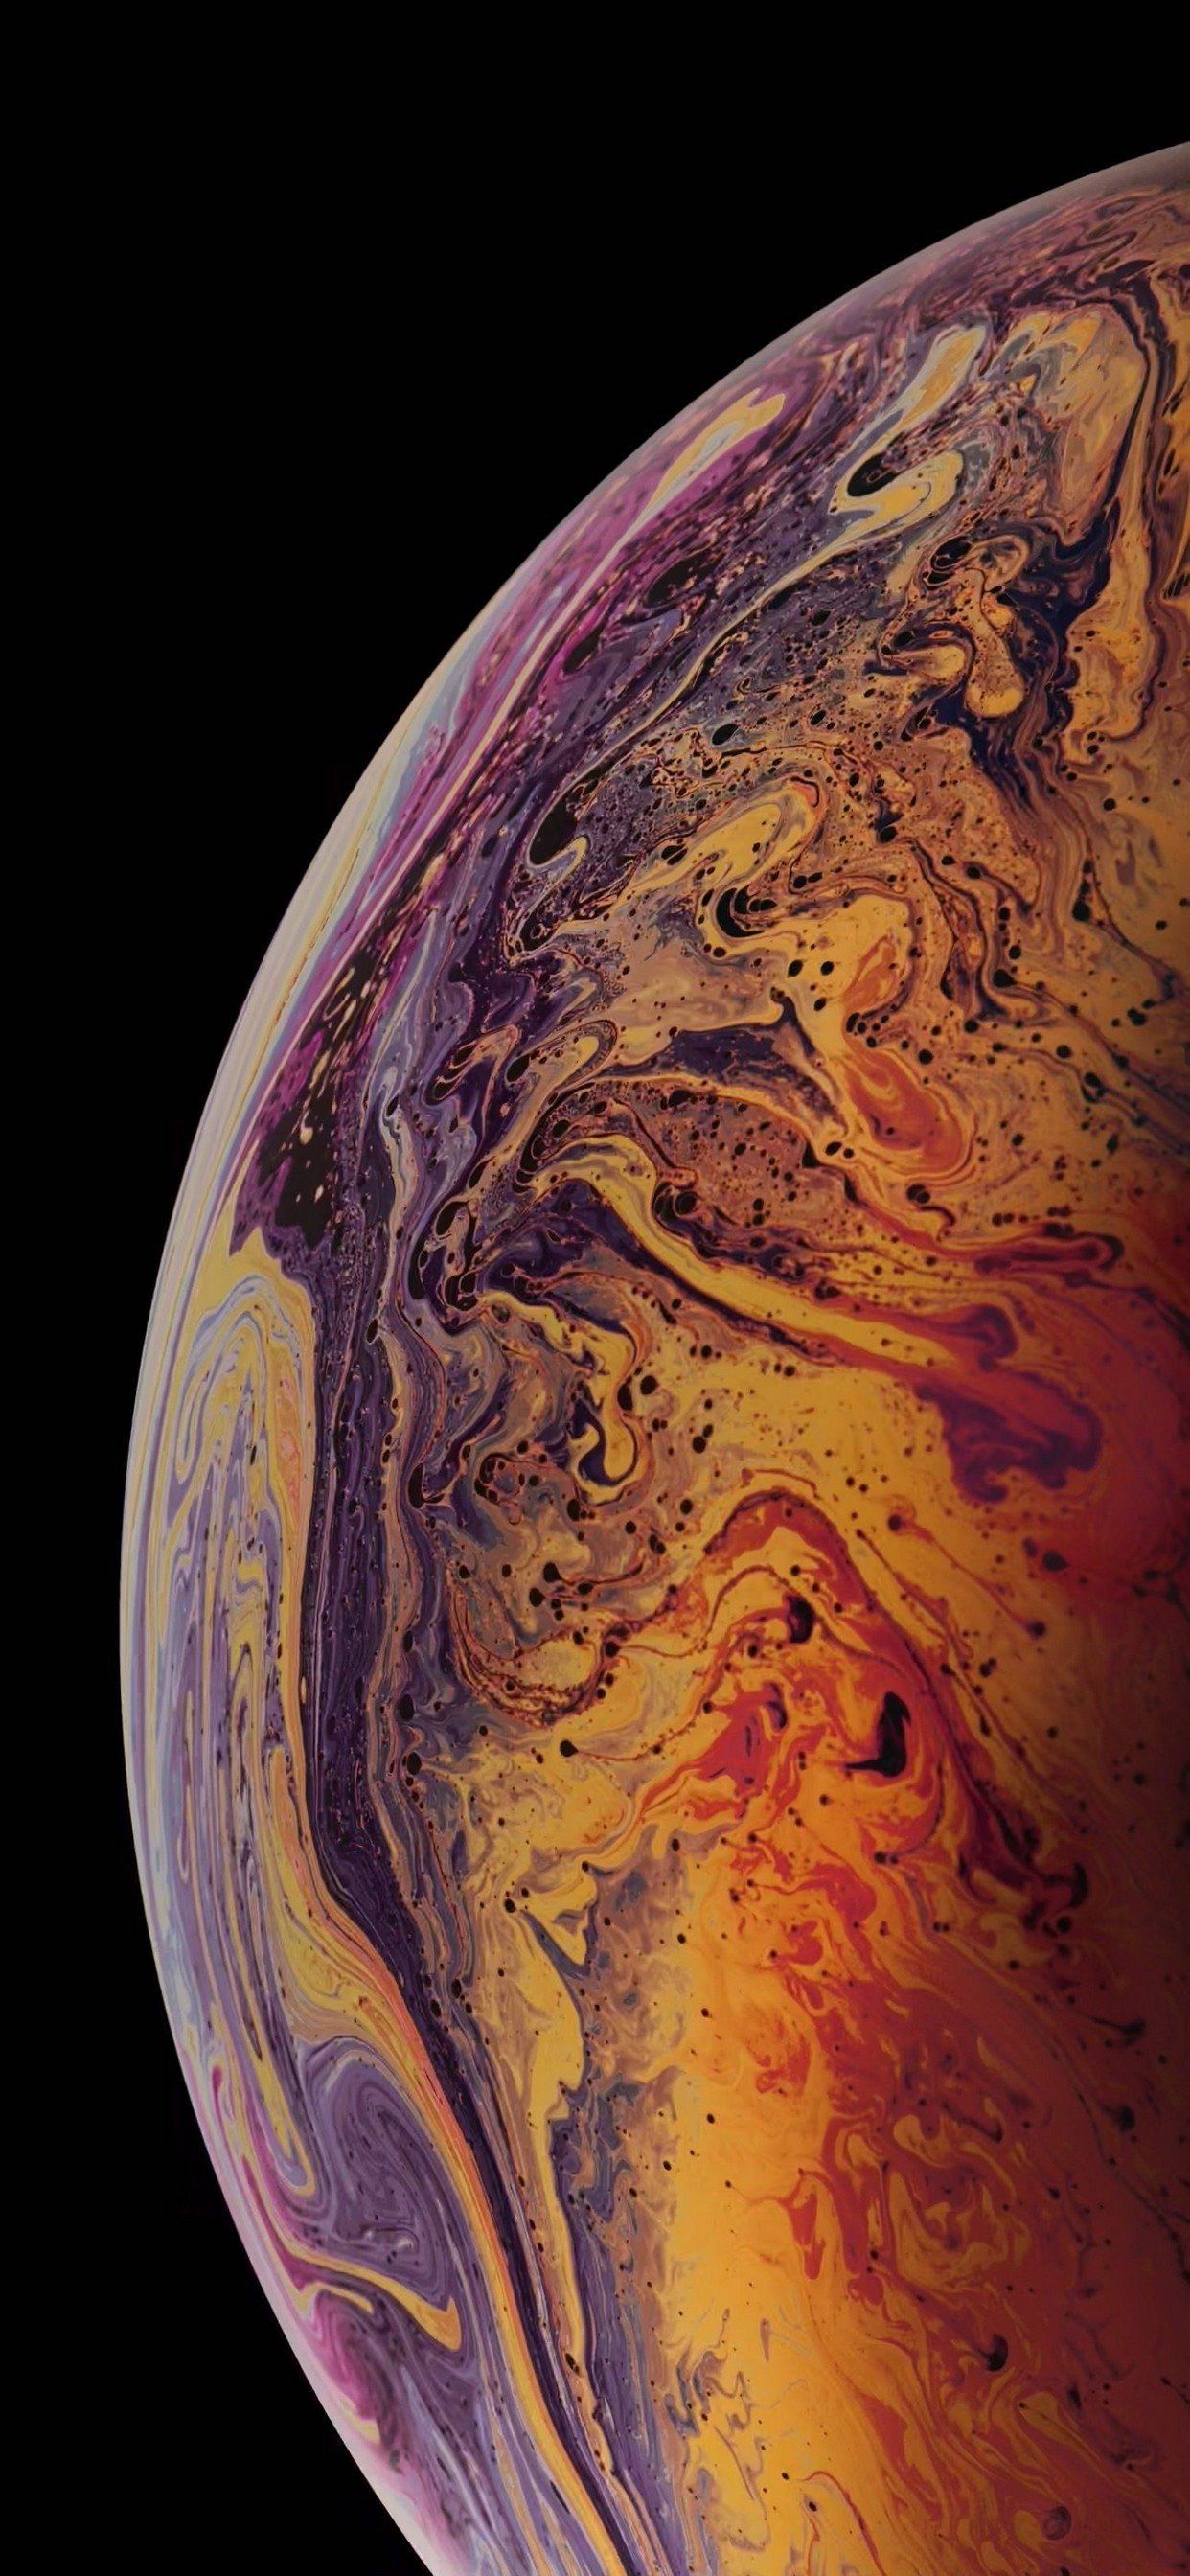 Chiêm ngưỡng những bức hình nền tuyệt đẹp của iPhone Xs Planet 3D Wallpapers – Galaxy và khám phá vẻ đẹp cuốn hút của không gian huyền ảo ngay trên màn hình điện thoại của bạn.